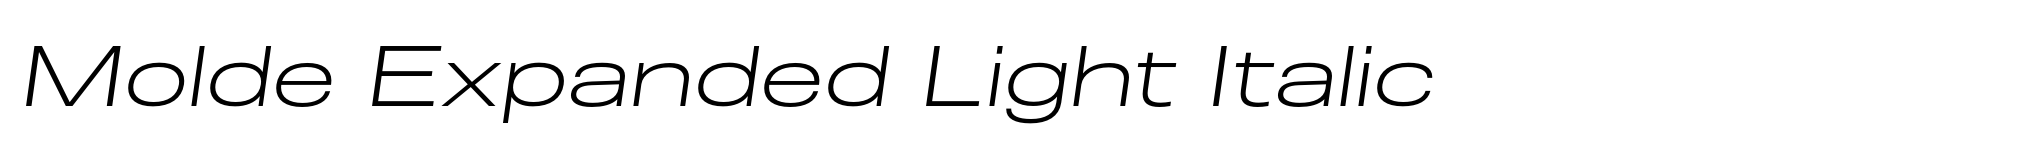 Molde Expanded Light Italic image